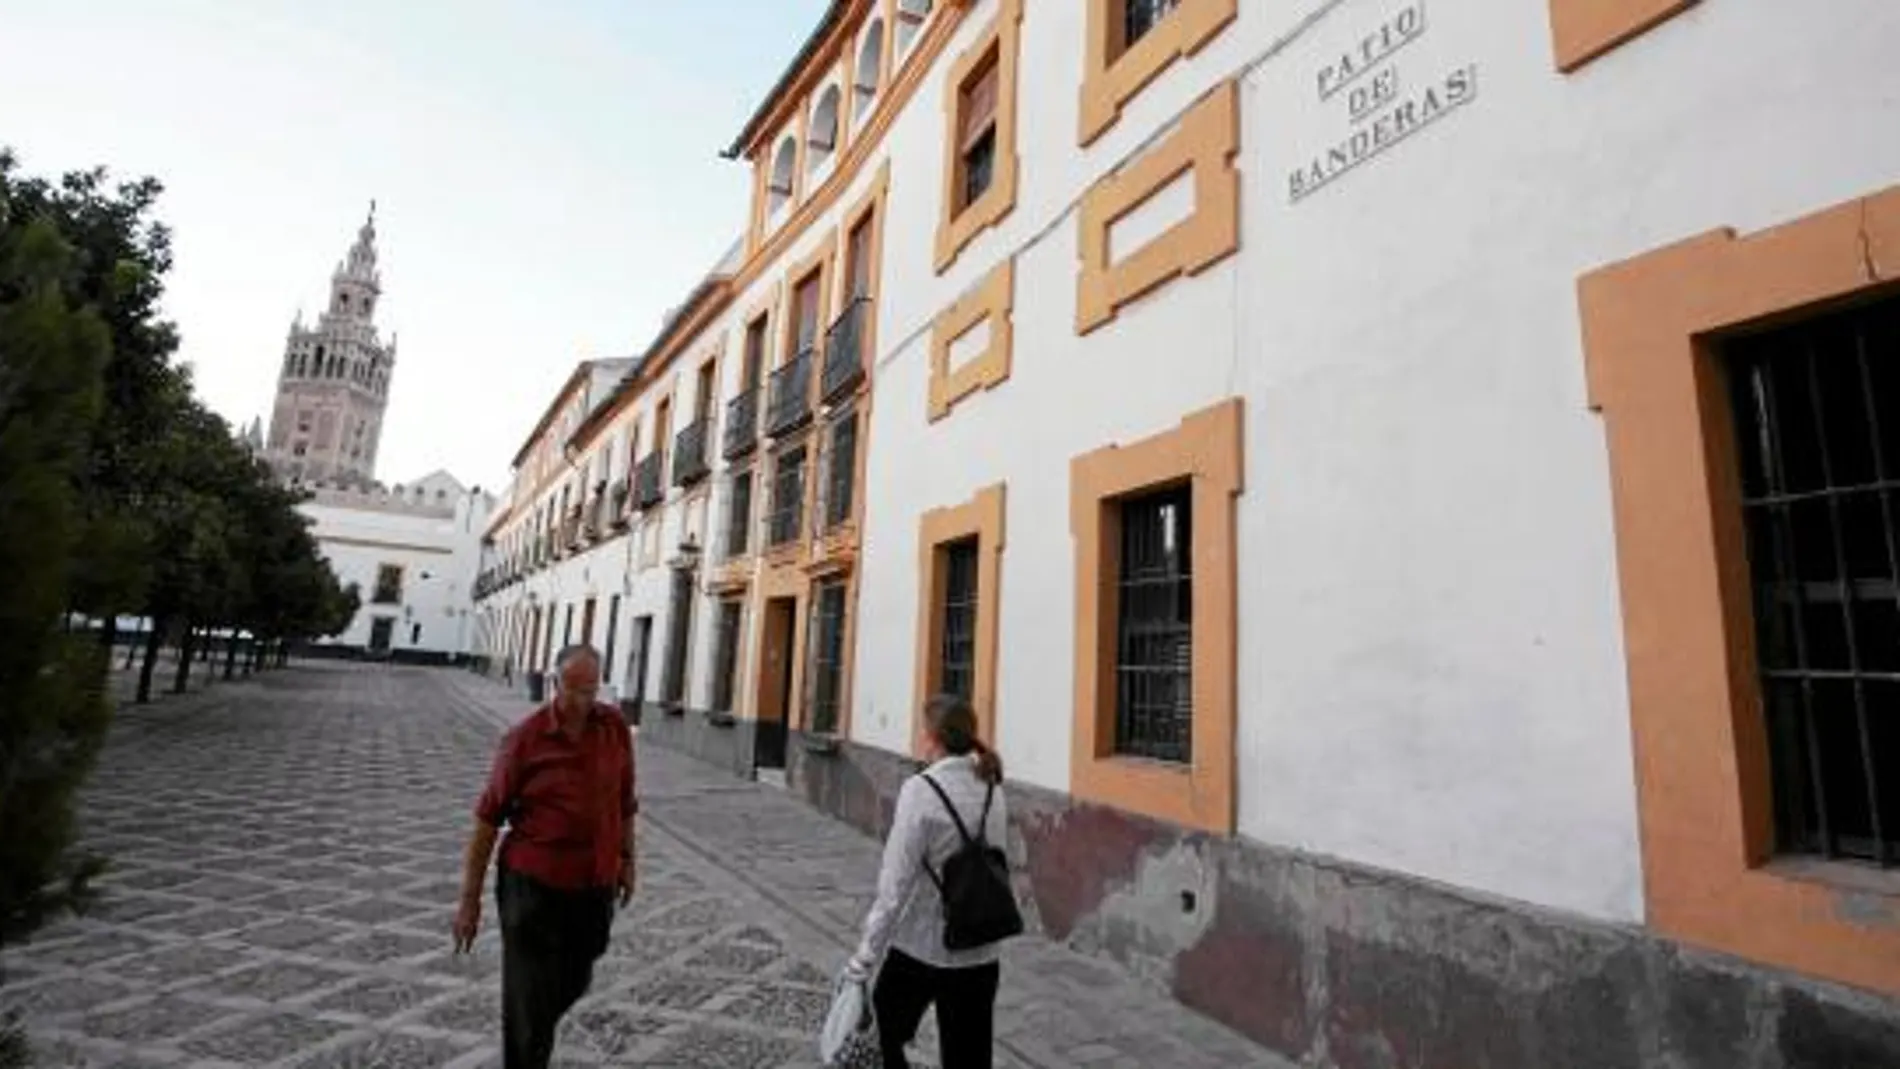 El Estado pretende flexibilizar la catalogación en sus inmuebles cercanos al Alcázar